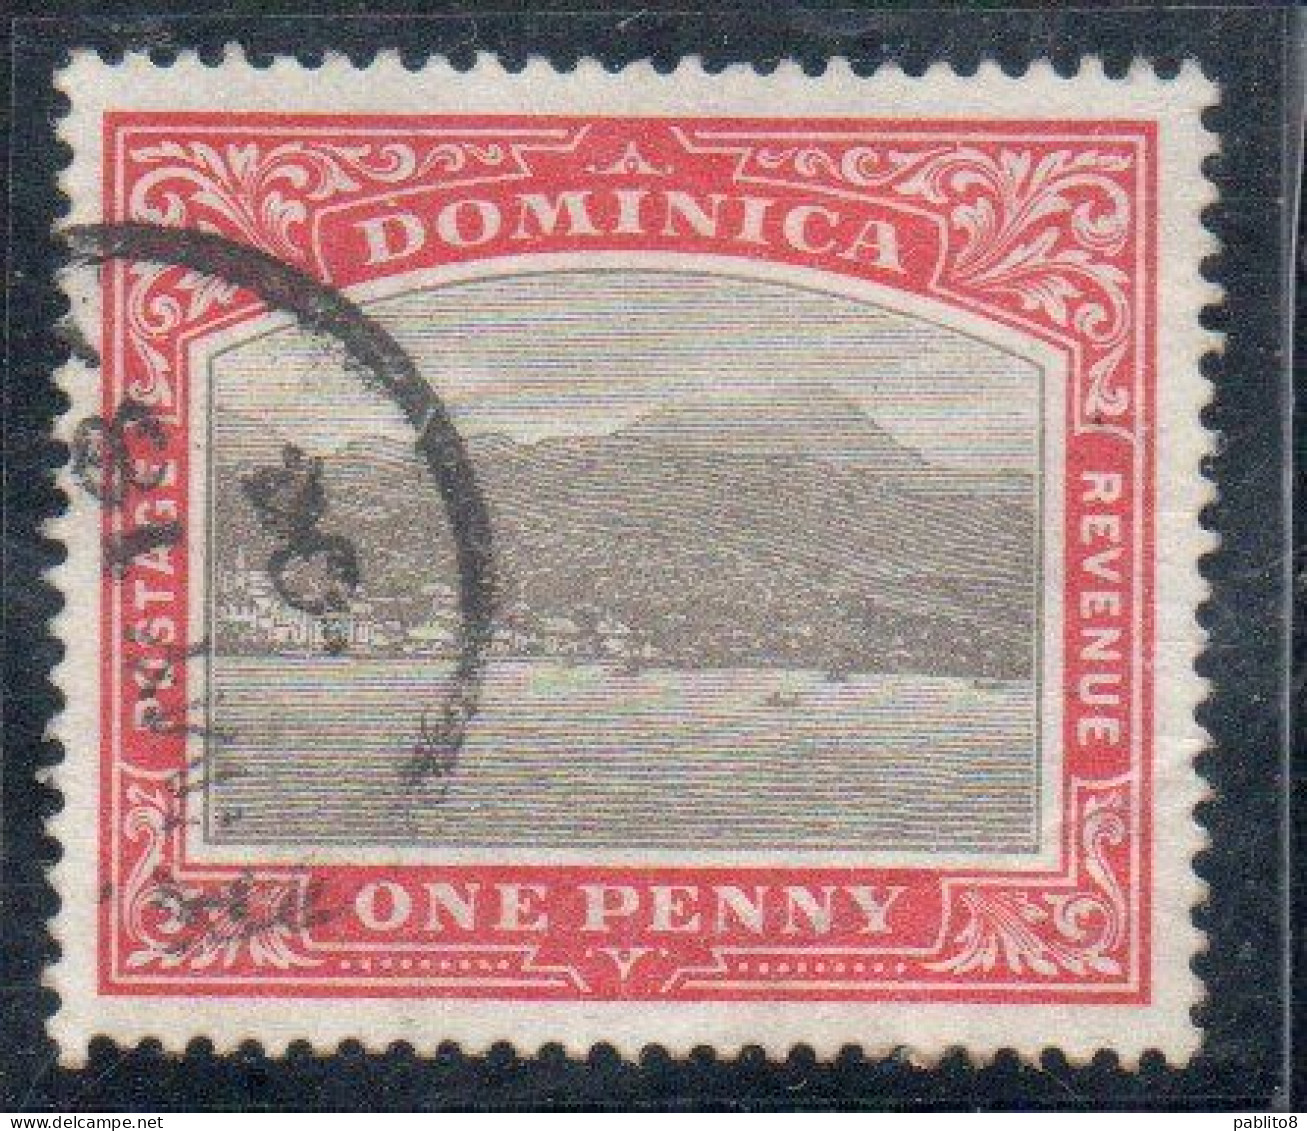 DOMINICA 1903 ROSEAU CAPITAL 1p USADO USED USATO OBLITERE' - Dominica (...-1978)